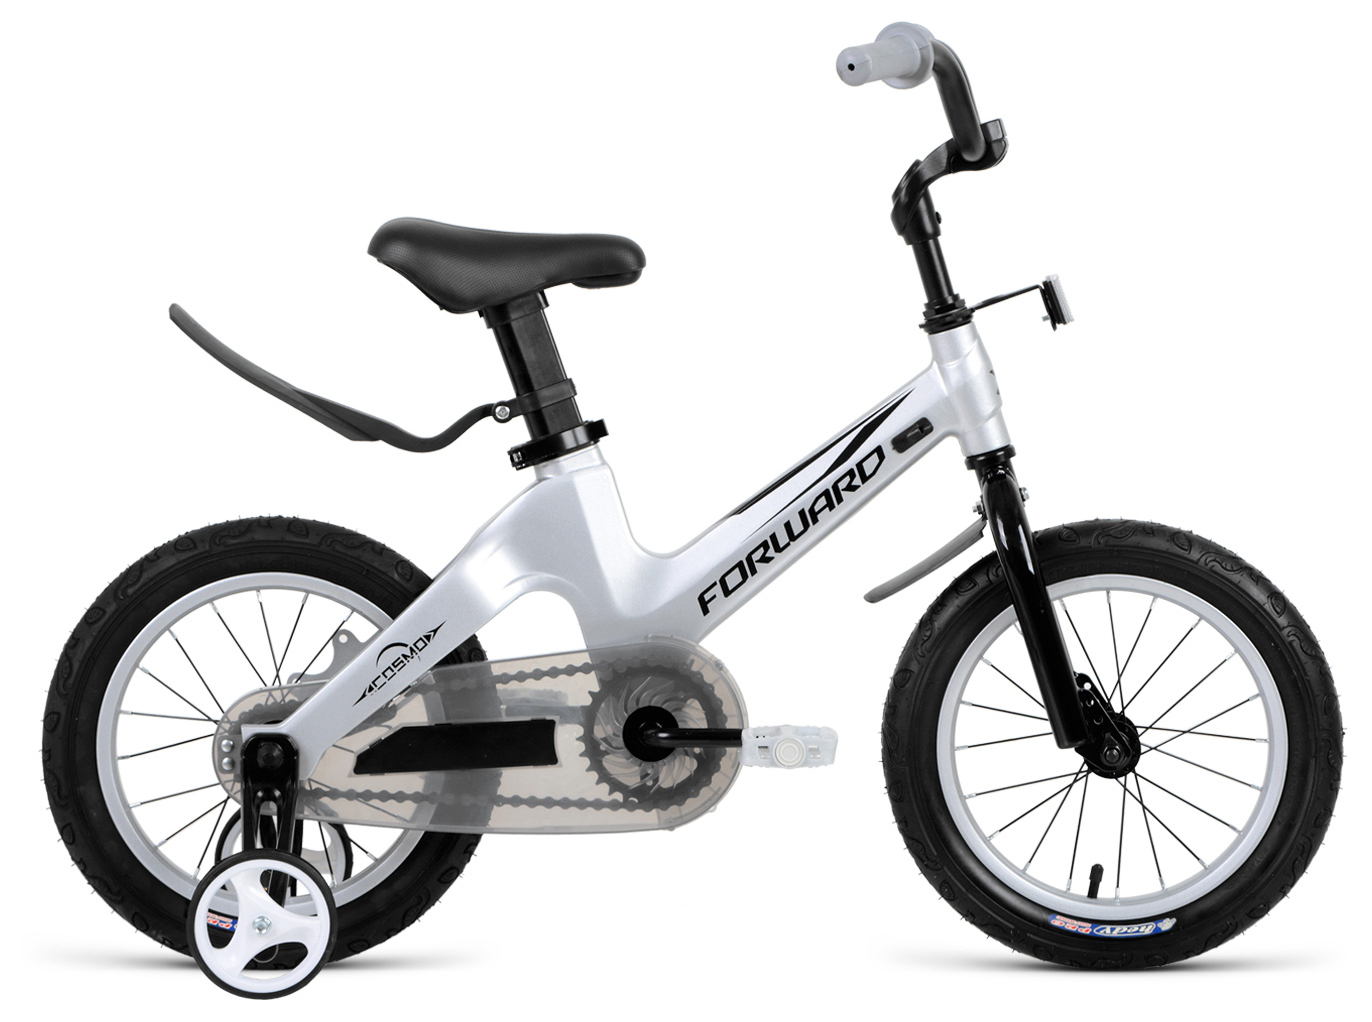  Отзывы о Детском велосипеде Forward Cosmo 14 2020